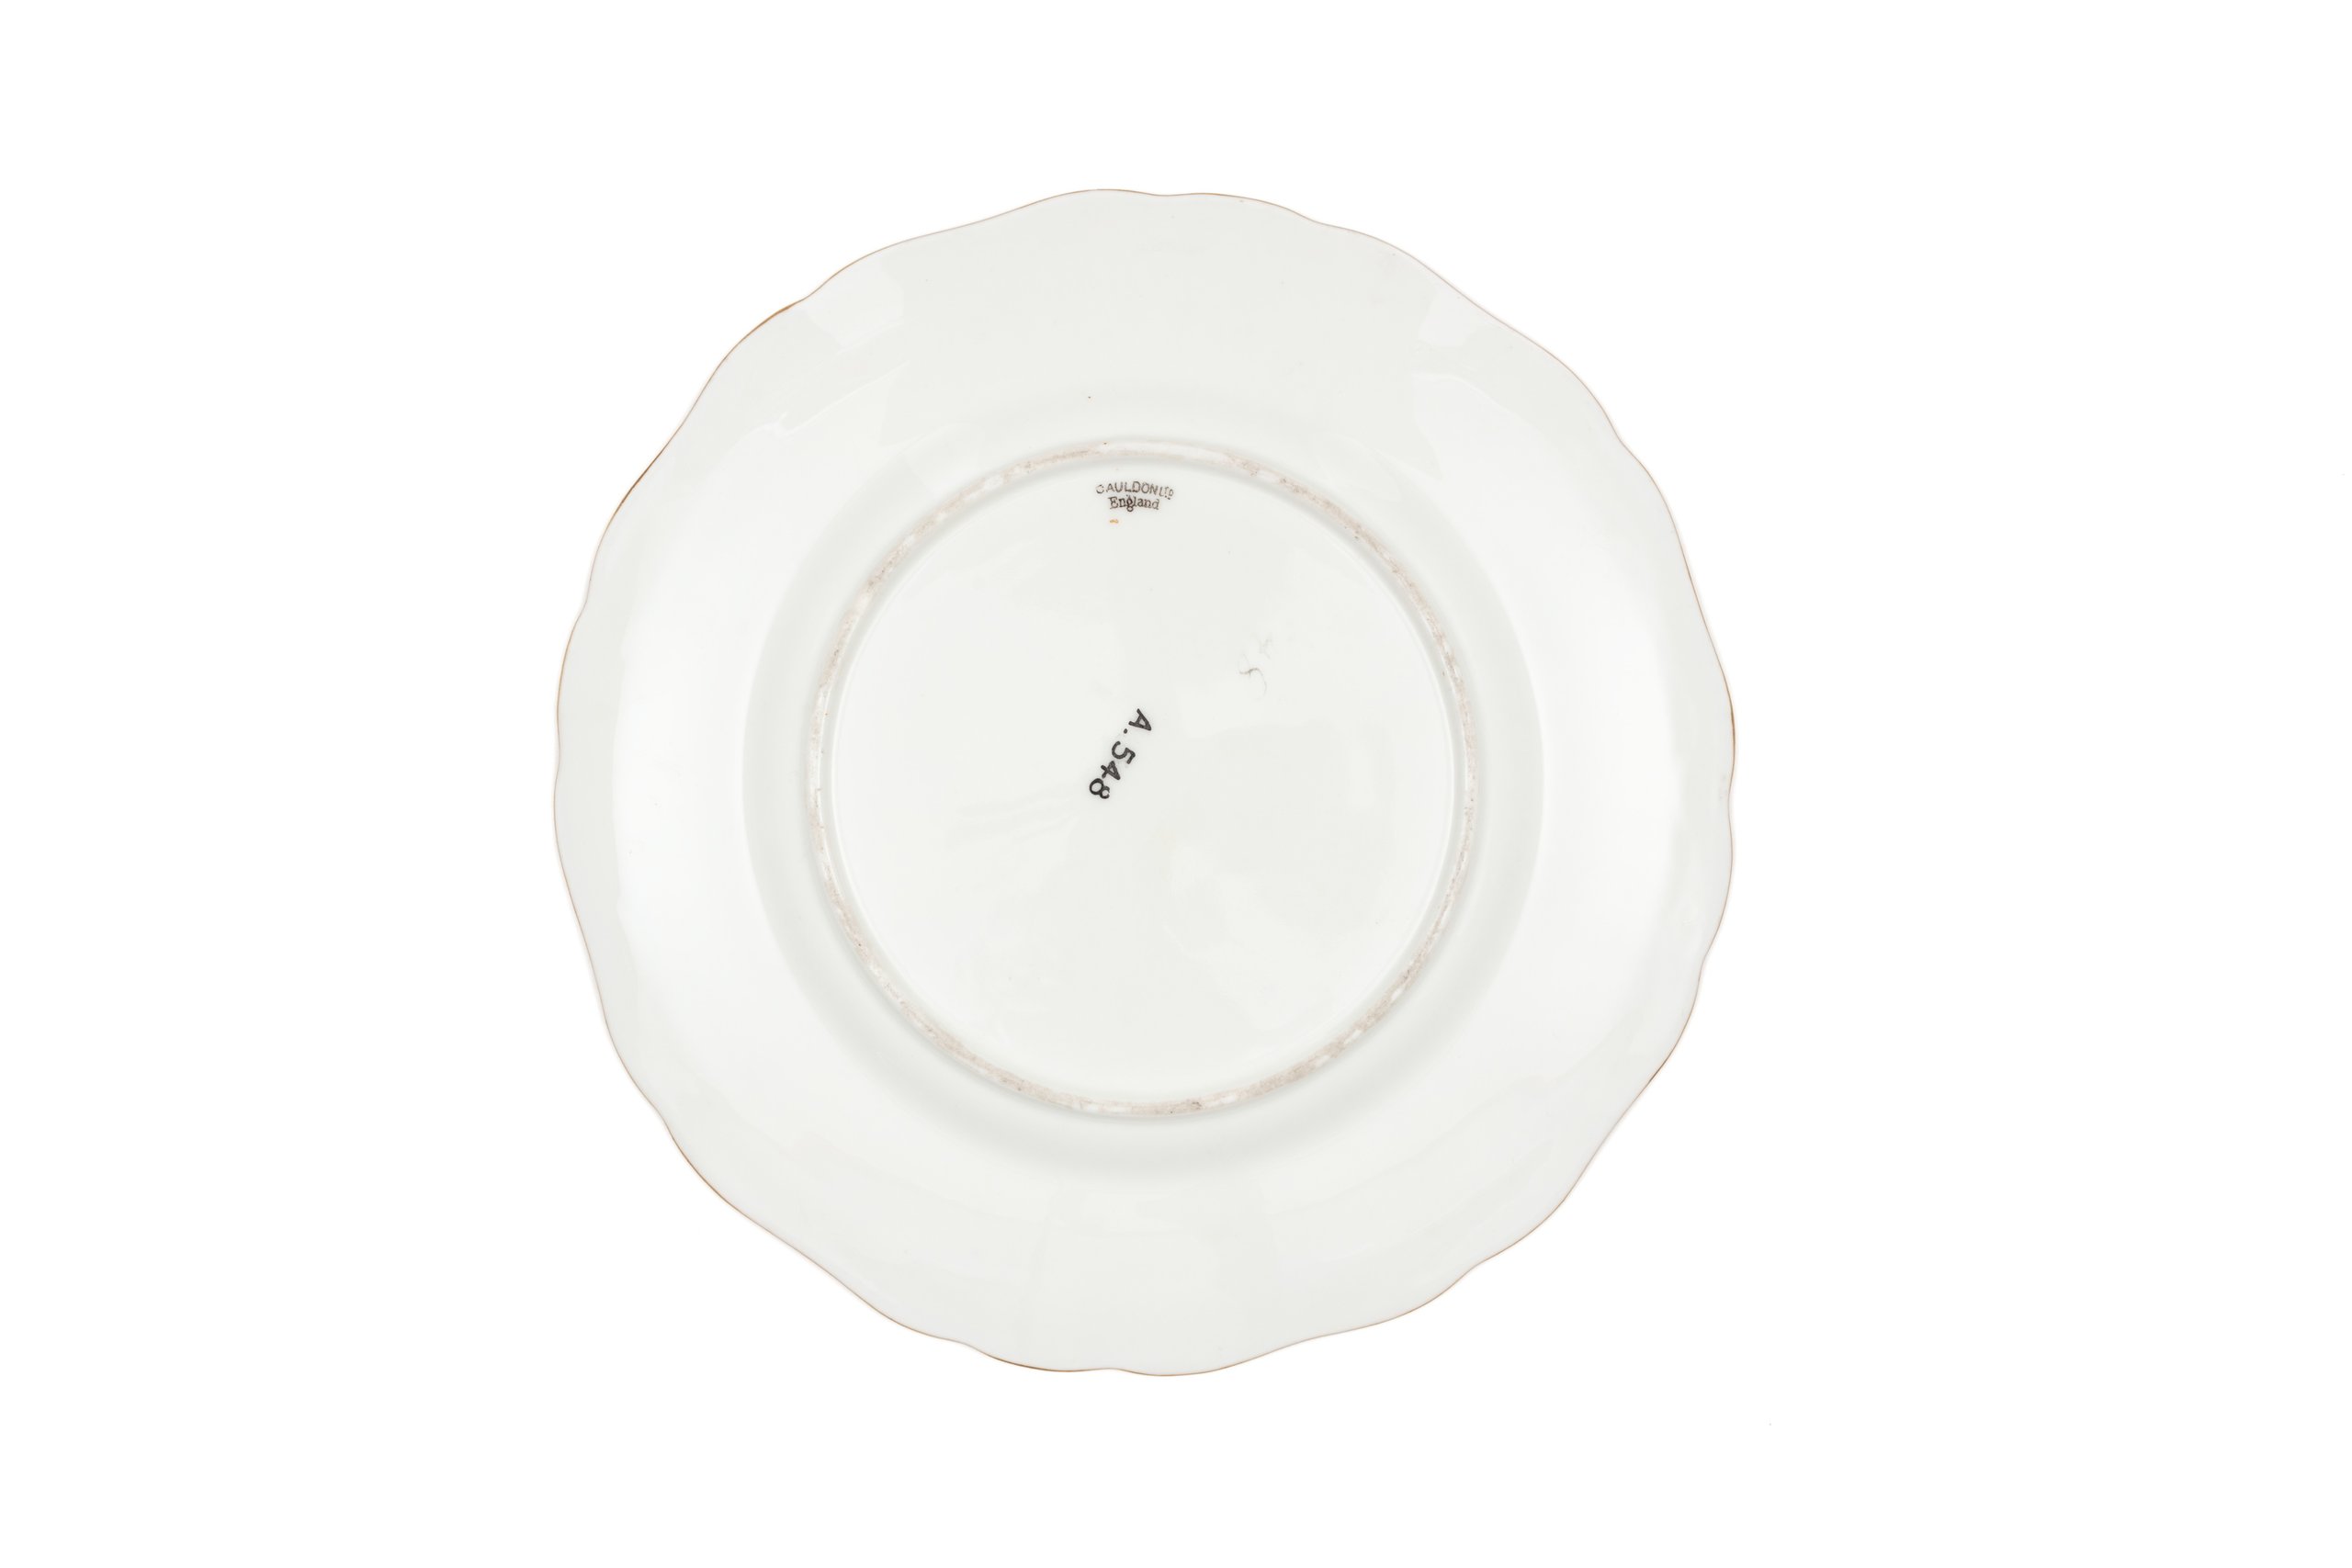 Bone china plate by Cauldon Limited